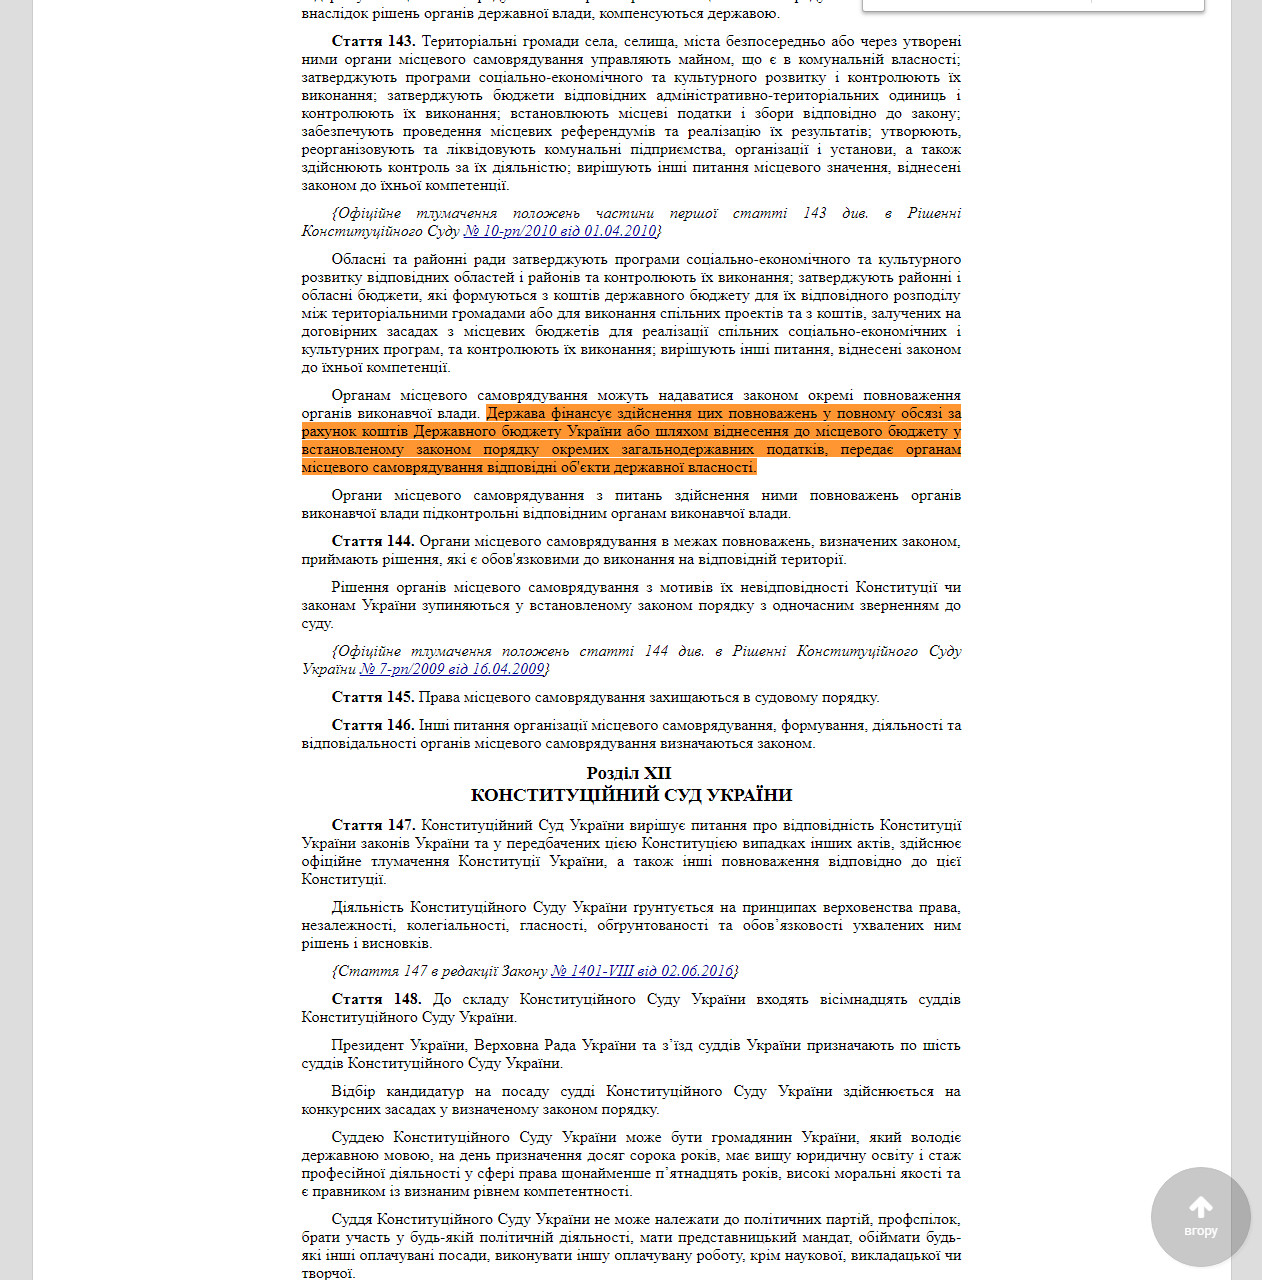 https://zakon.rada.gov.ua/laws/show/254%D0%BA/96-%D0%B2%D1%80